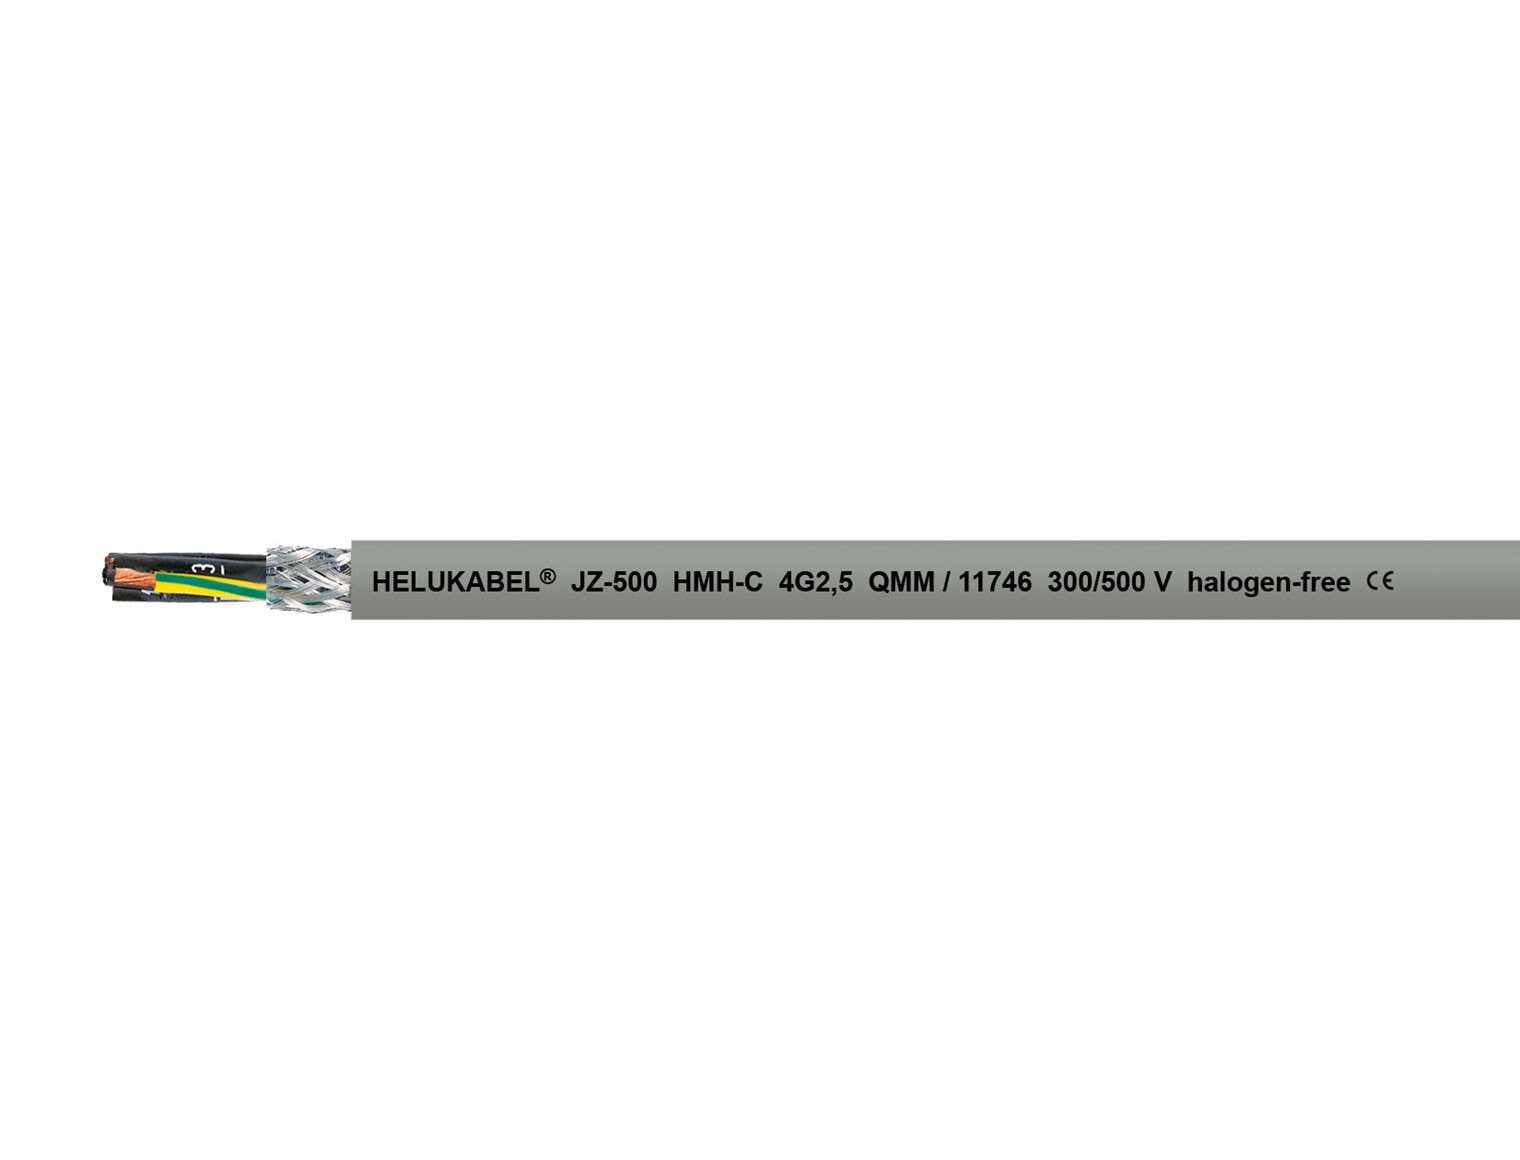 Helukabel HELU JZ-500 HMH-C 3G1,511723 - Low voltage cable - Grey - Polyvinyl chloride (PVC) - Polyvinyl chloride (PVC) - Cooper - -15 - 70 °C